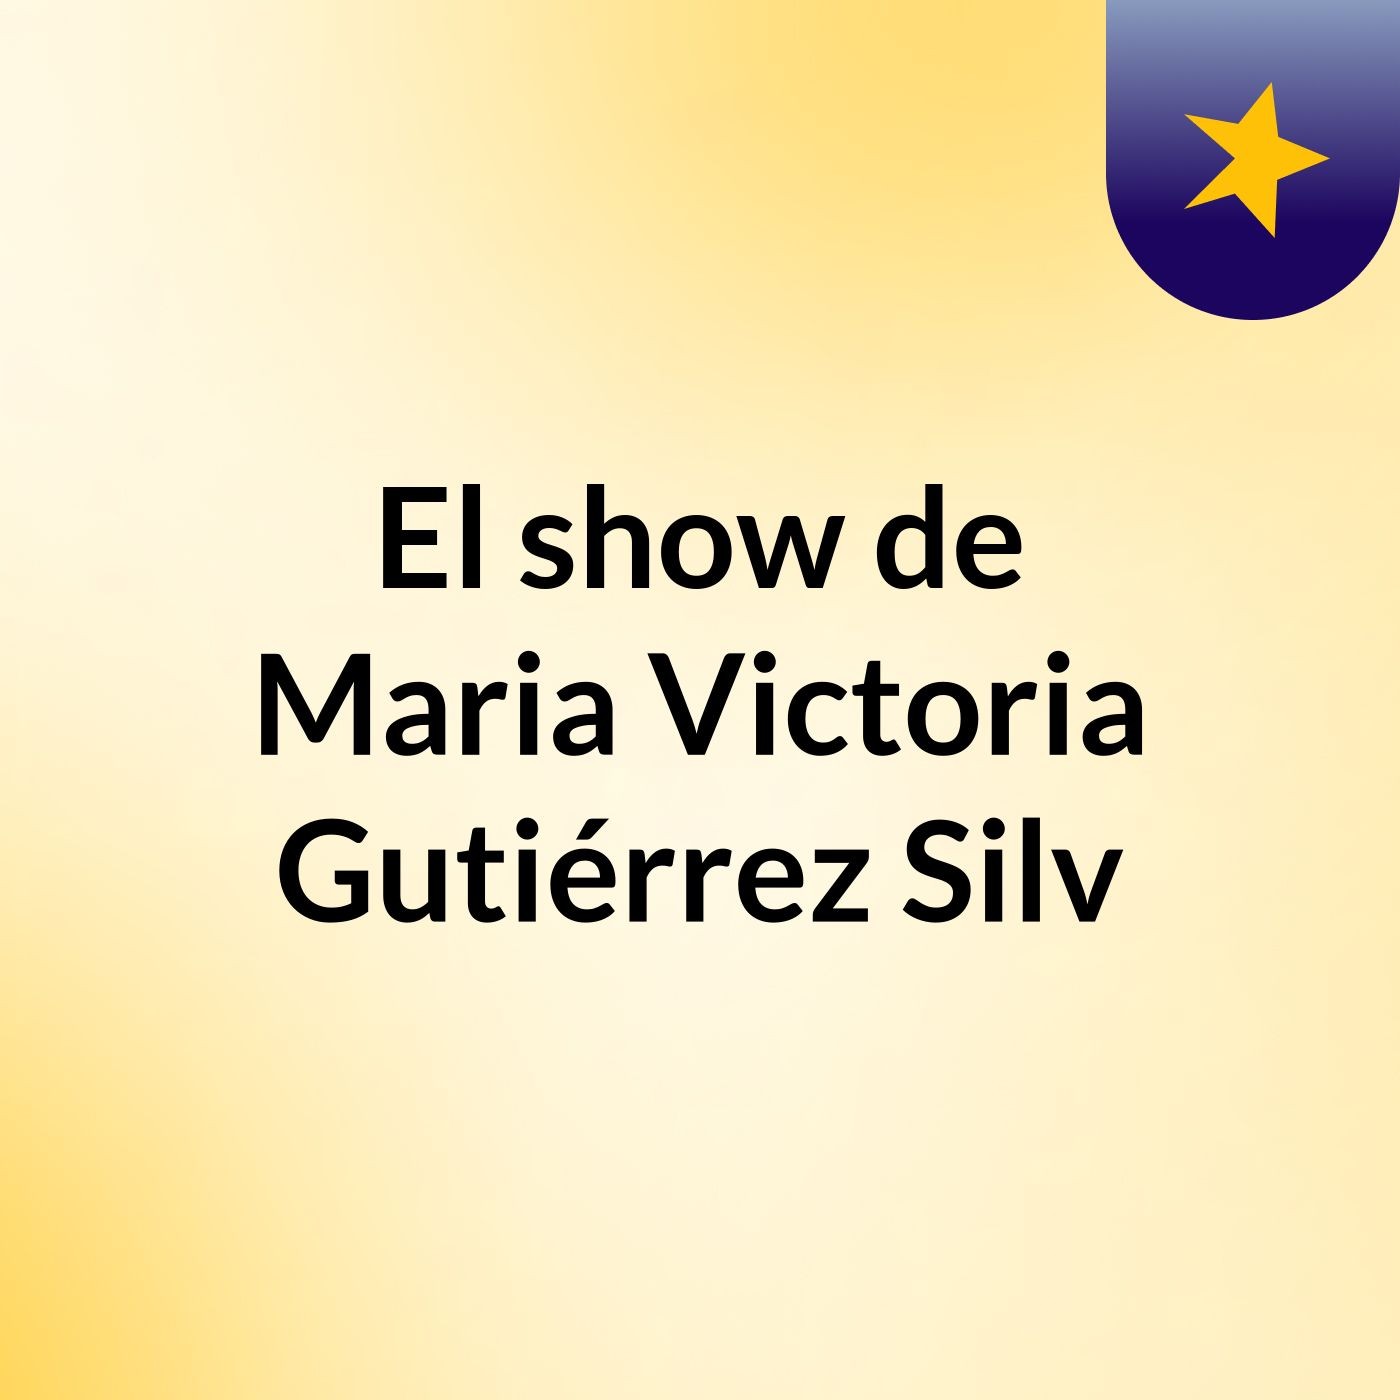 El show de Maria Victoria Gutiérrez Silv